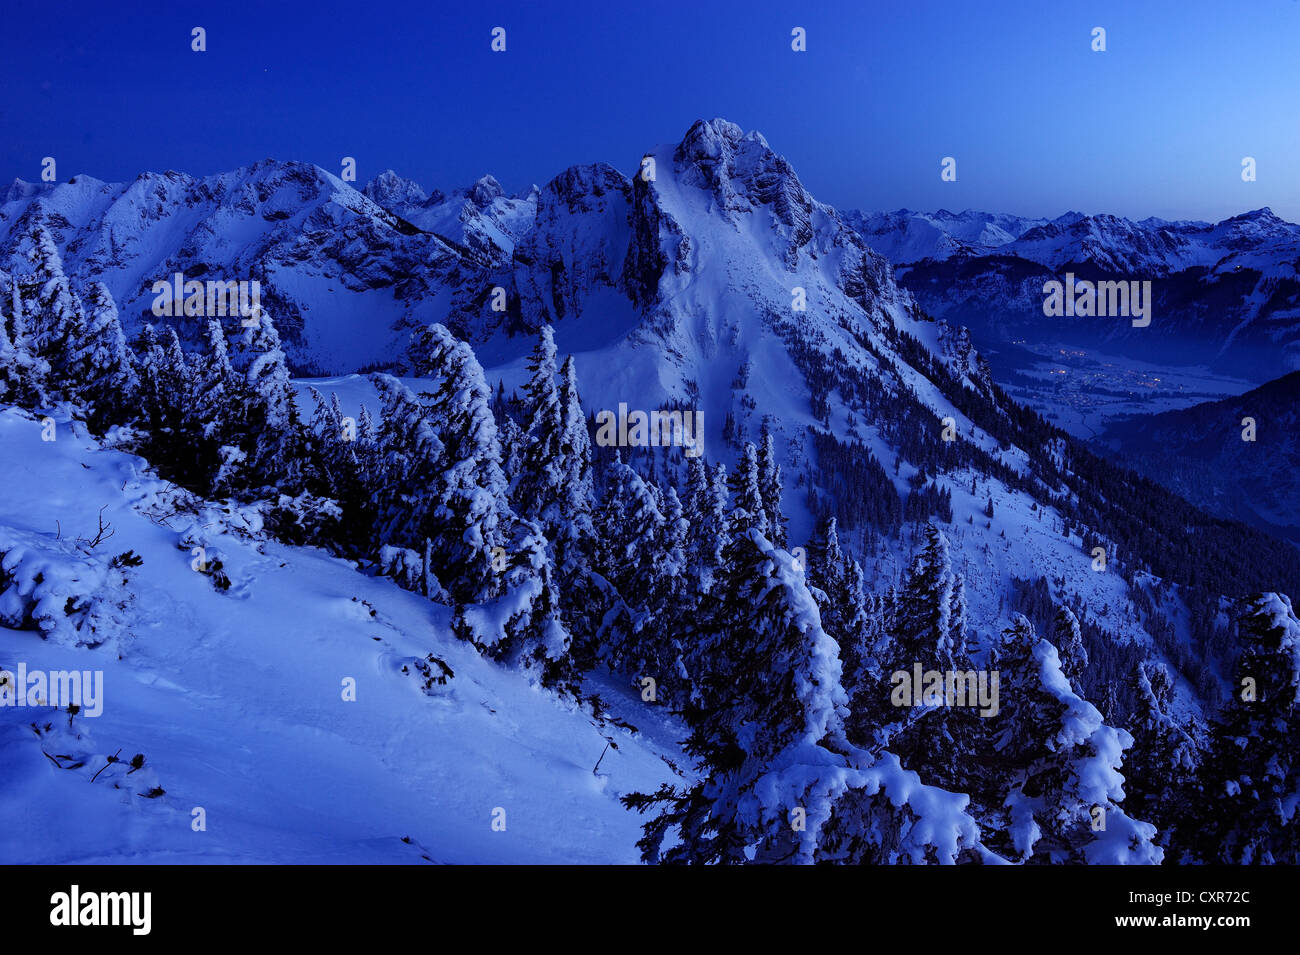 Des pics de montagne à l'heure bleue, Pfronten, Allgaeu, Bavaria, Germany, Europe Banque D'Images